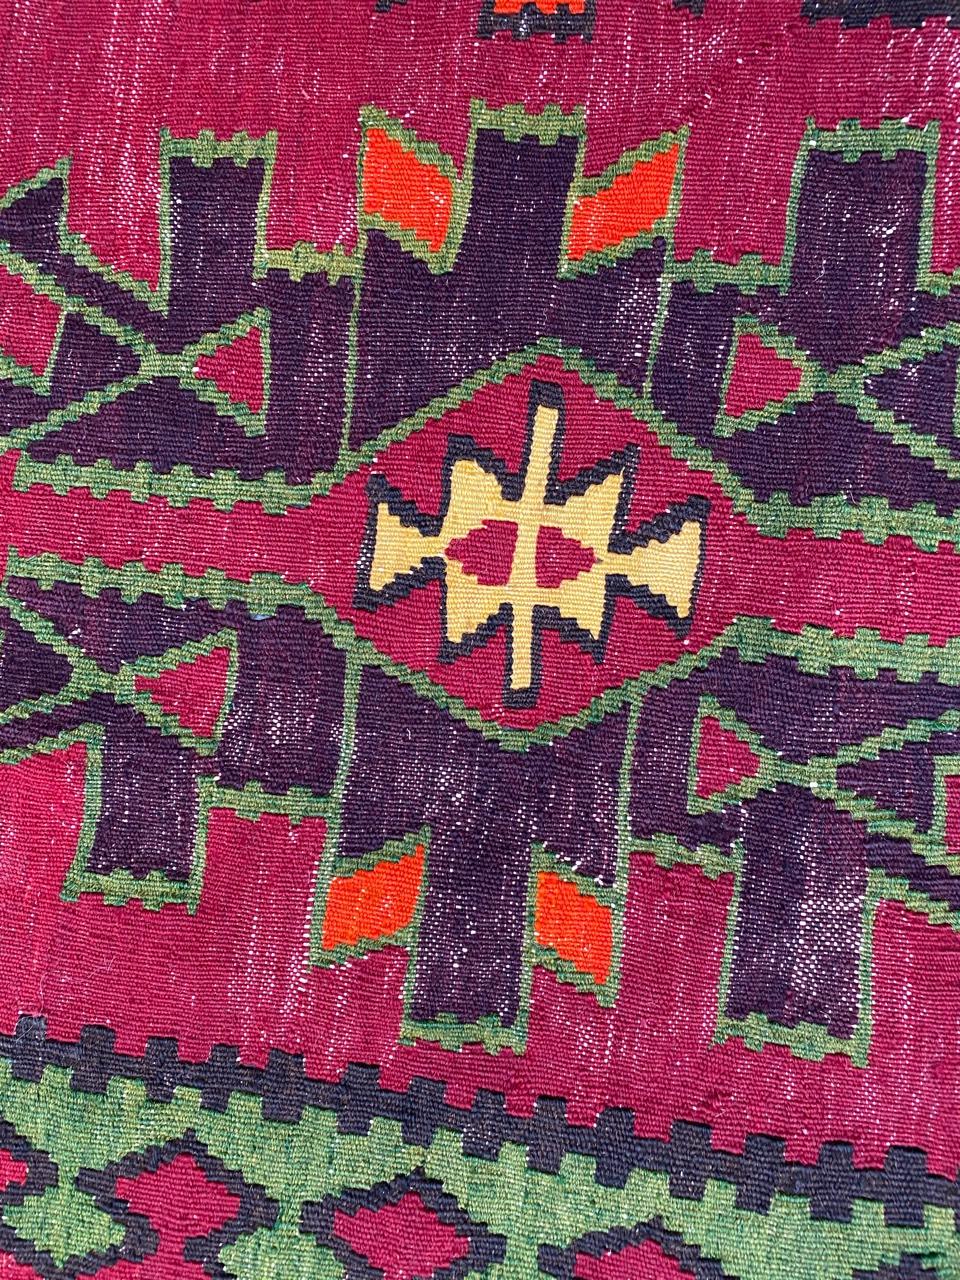 Hand-Woven Nice Vintage Colorful Turkish Kilim